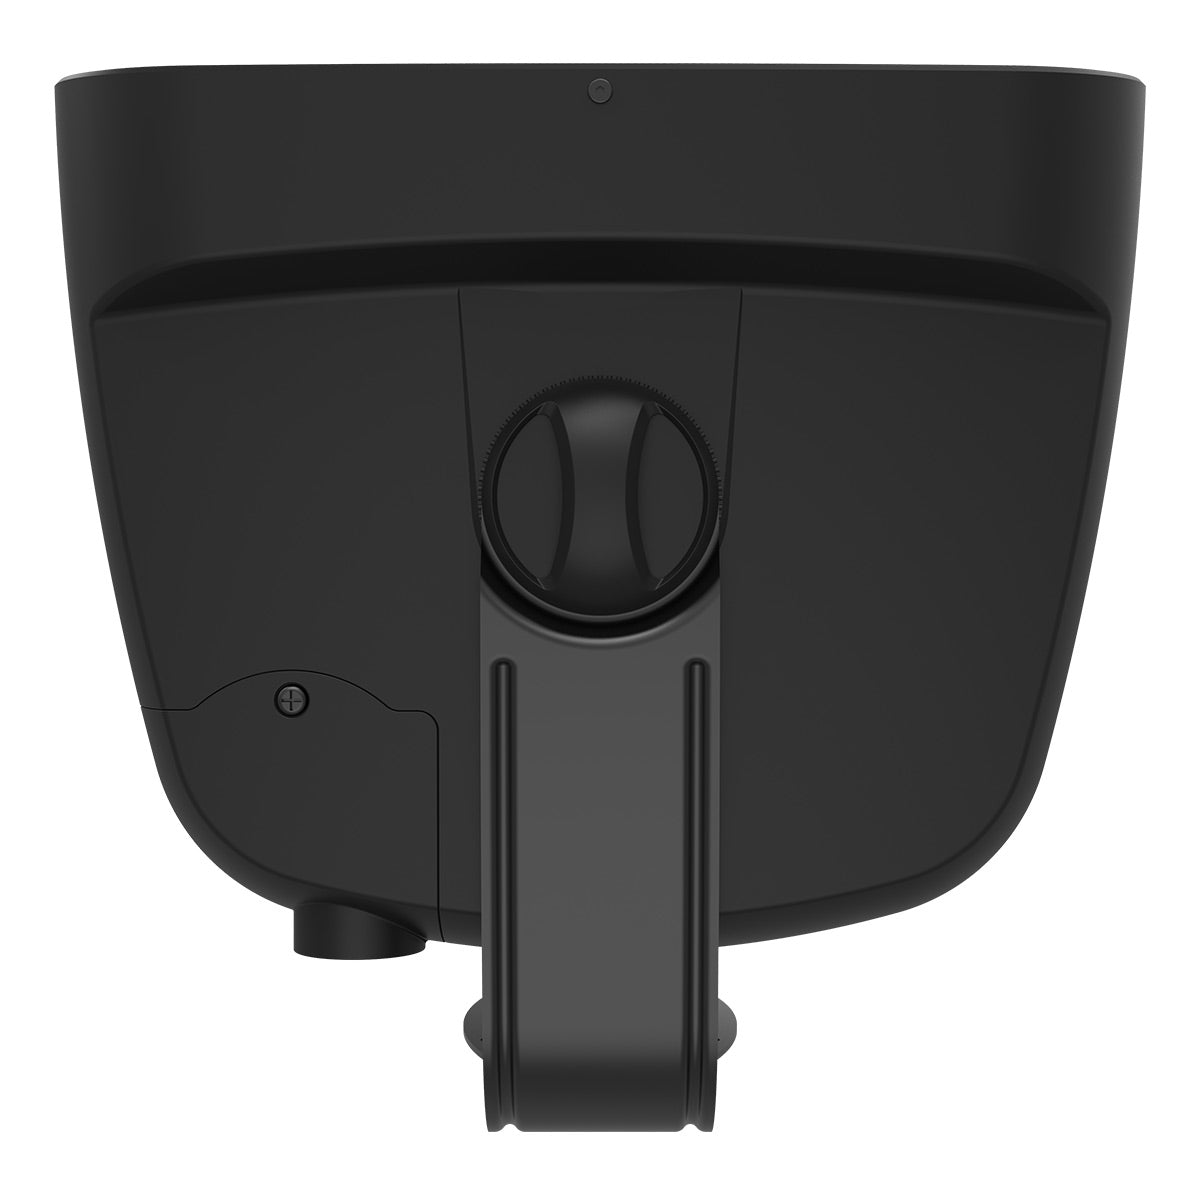 Klipsch RSM-800 Indoor/Outdoor Surface Mount Speakers with 8" Woofer - Pair (Black)